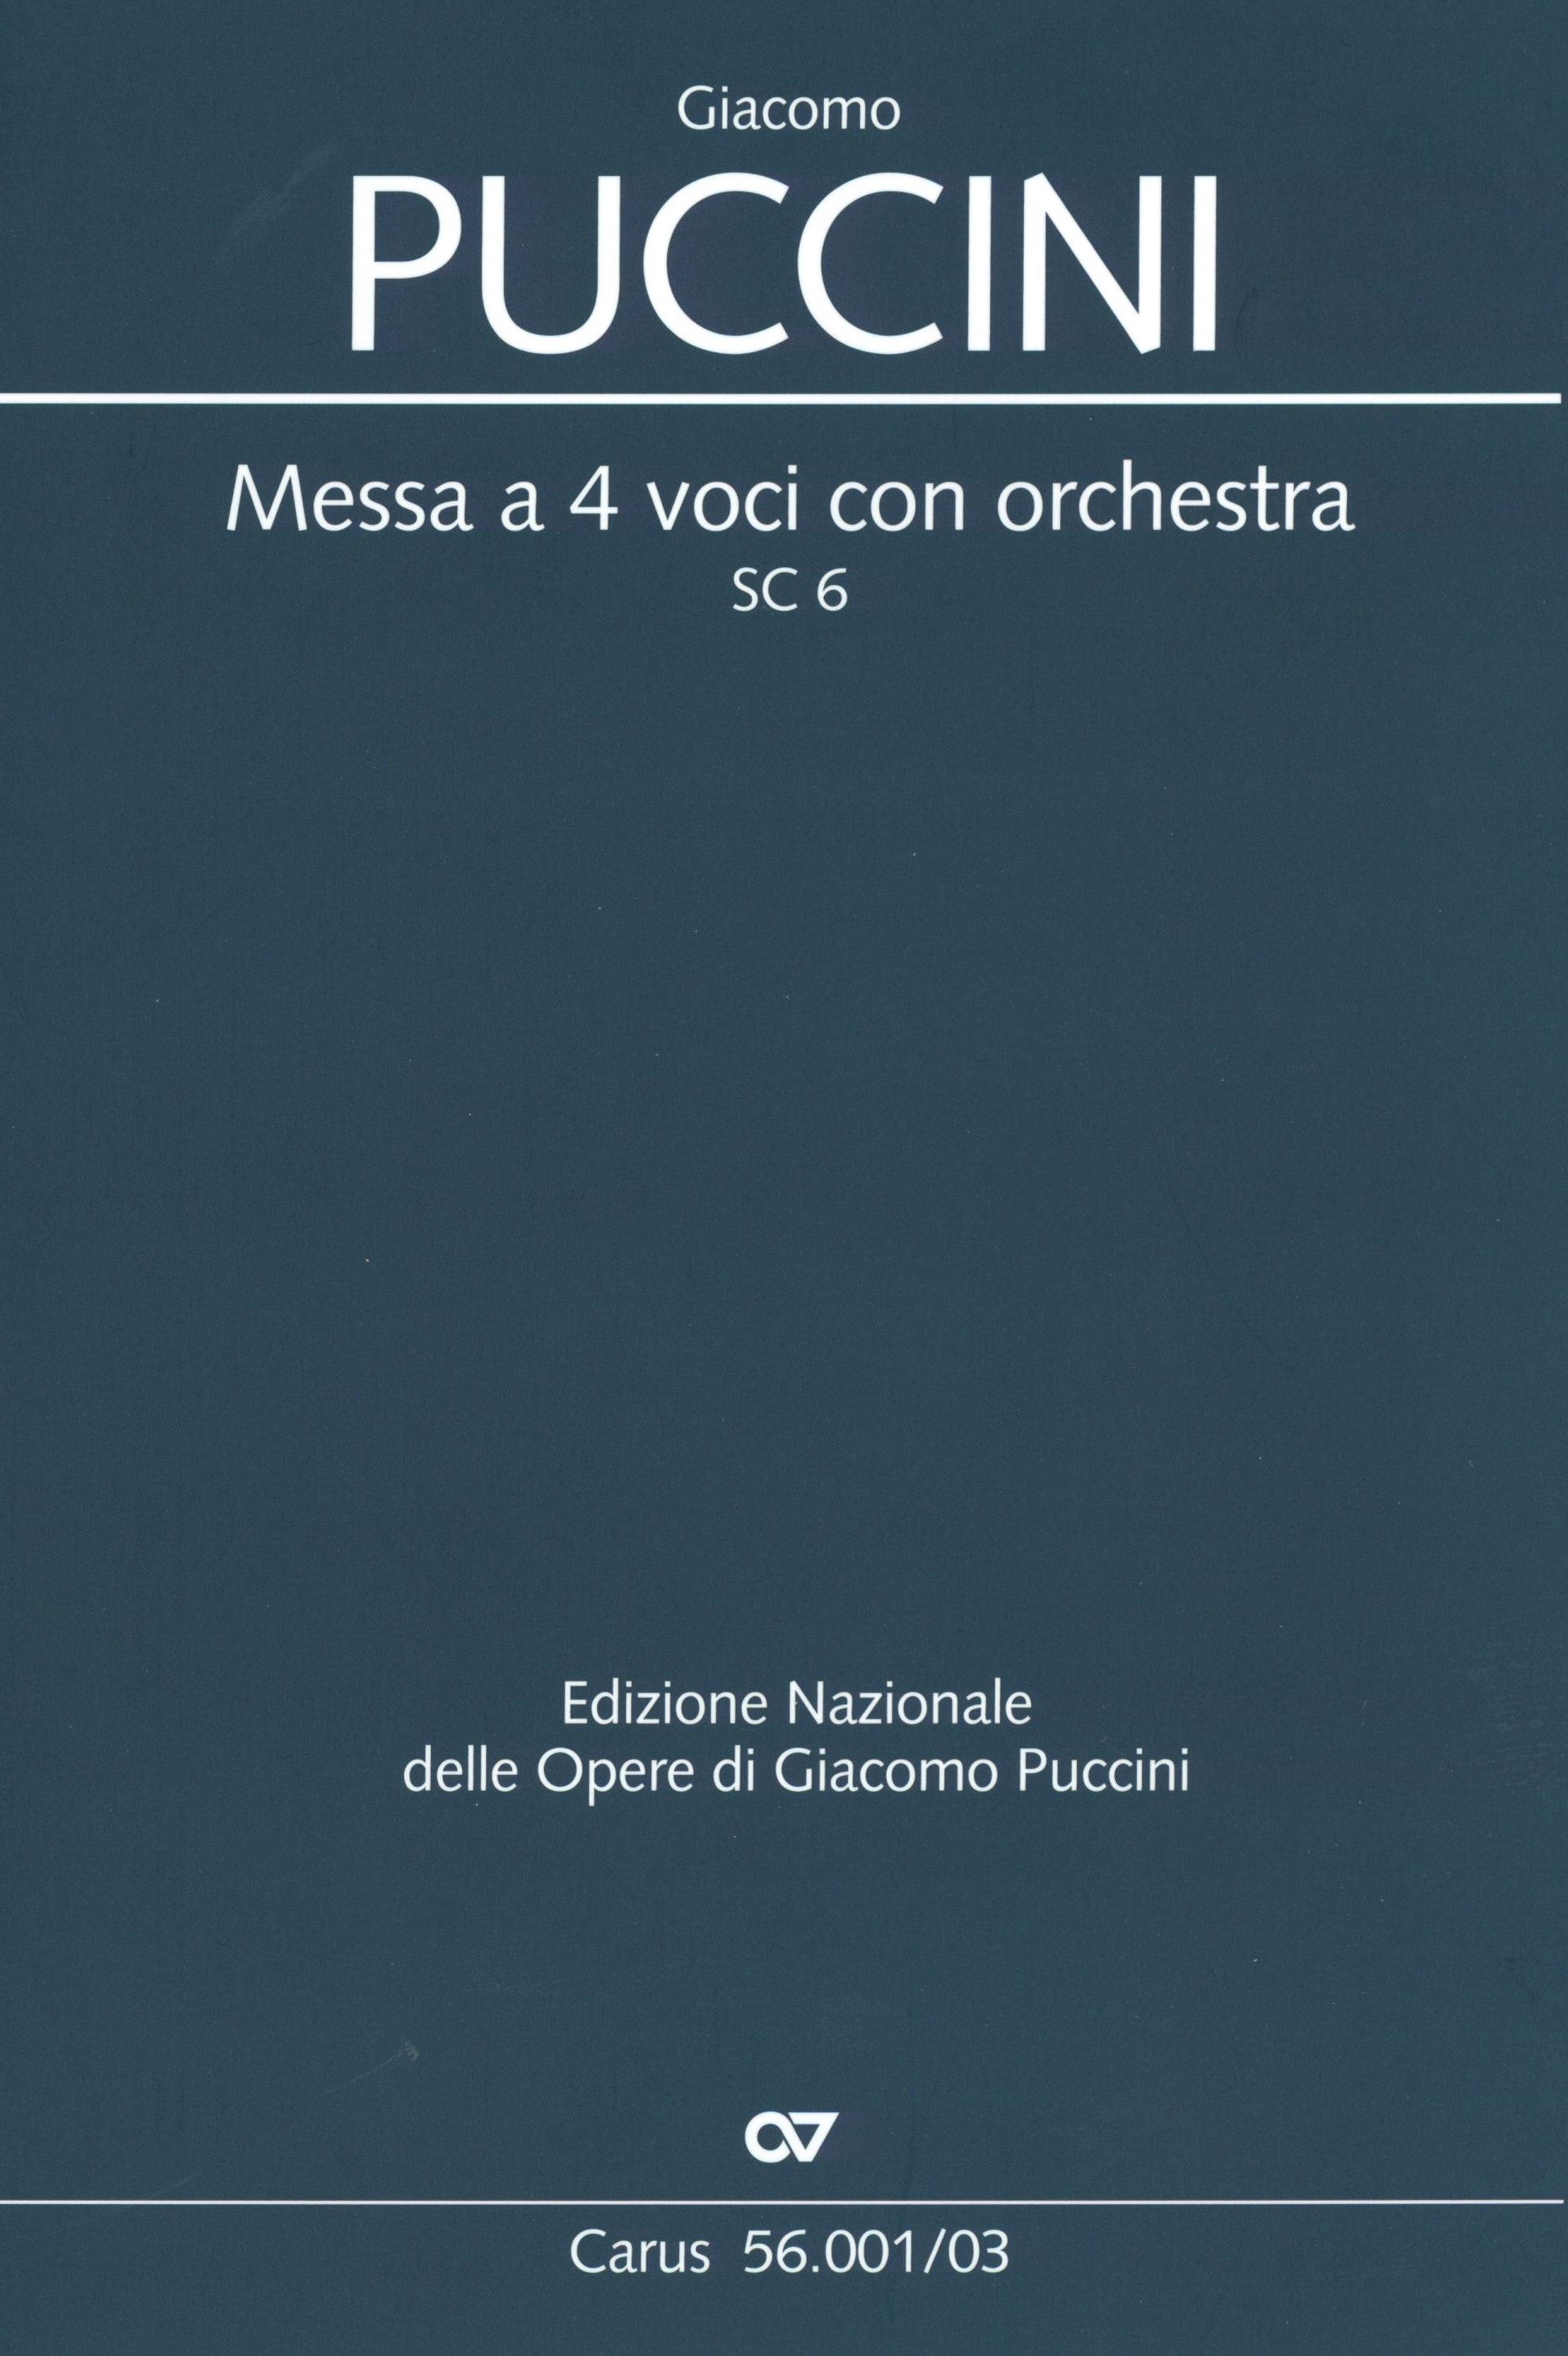 Puccini: Messa a 4 voci con orchestra, SC 6